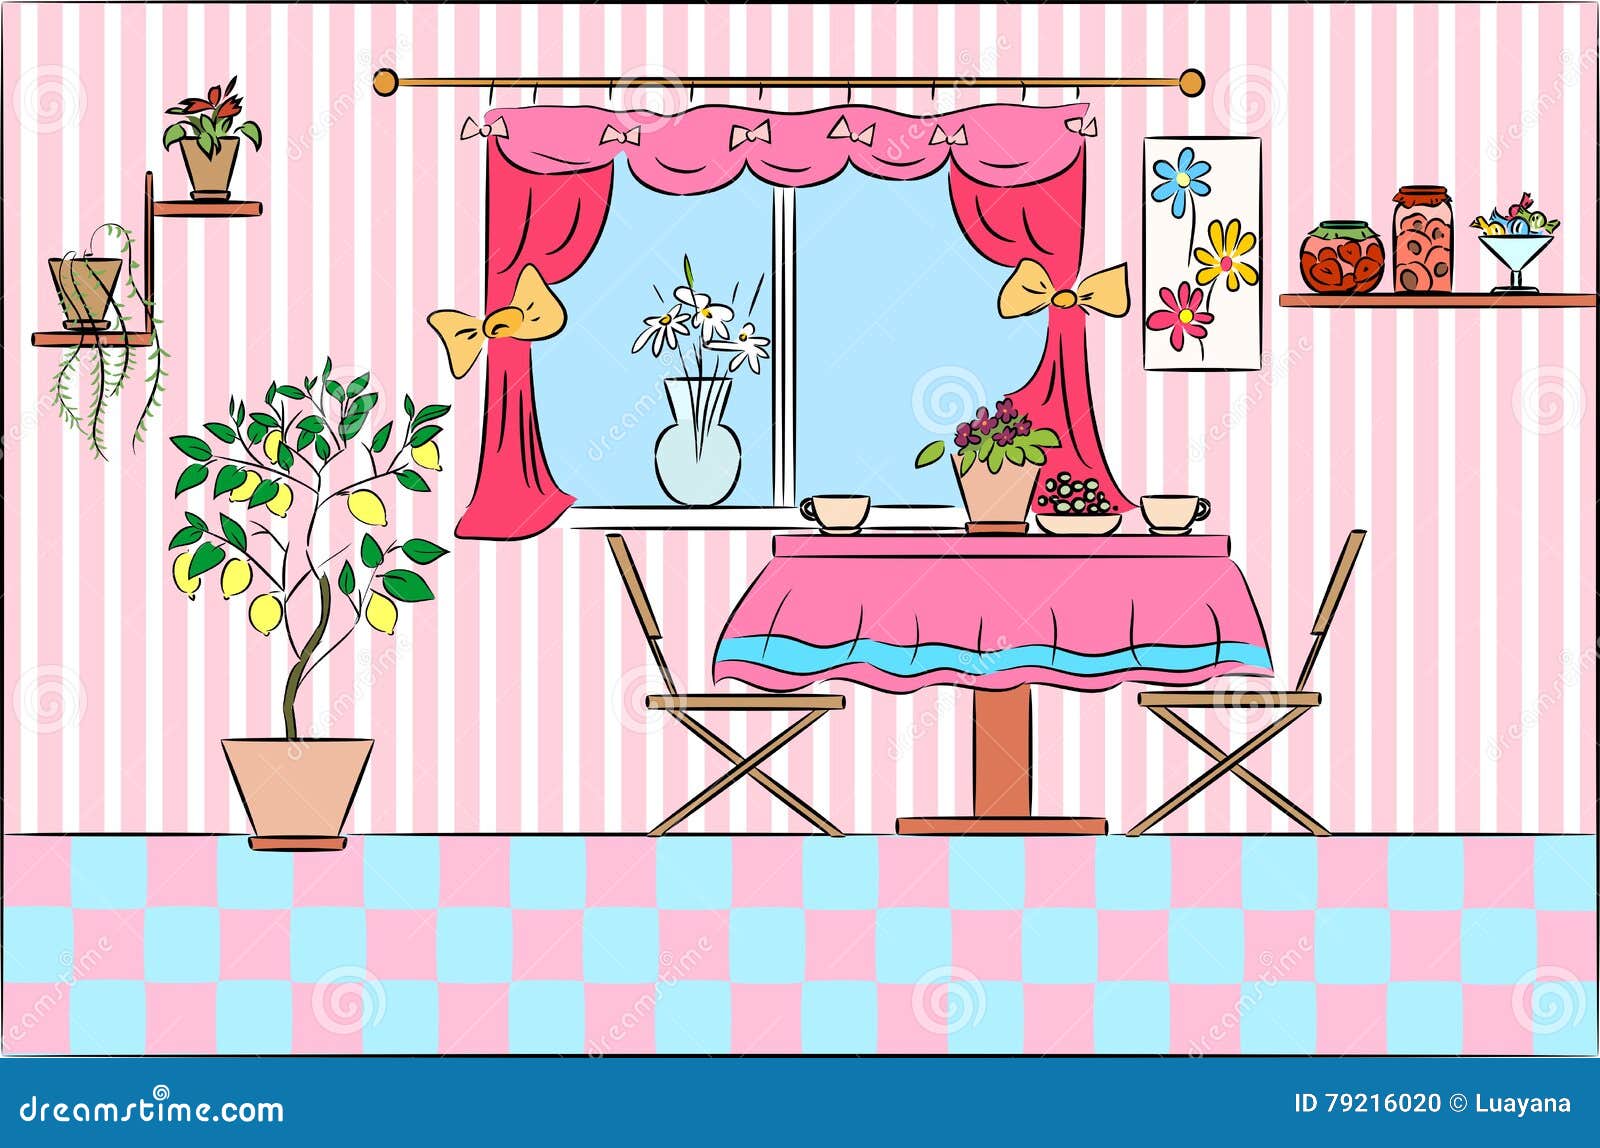 Dining room interior stock vector. Illustration of dining - 79216020